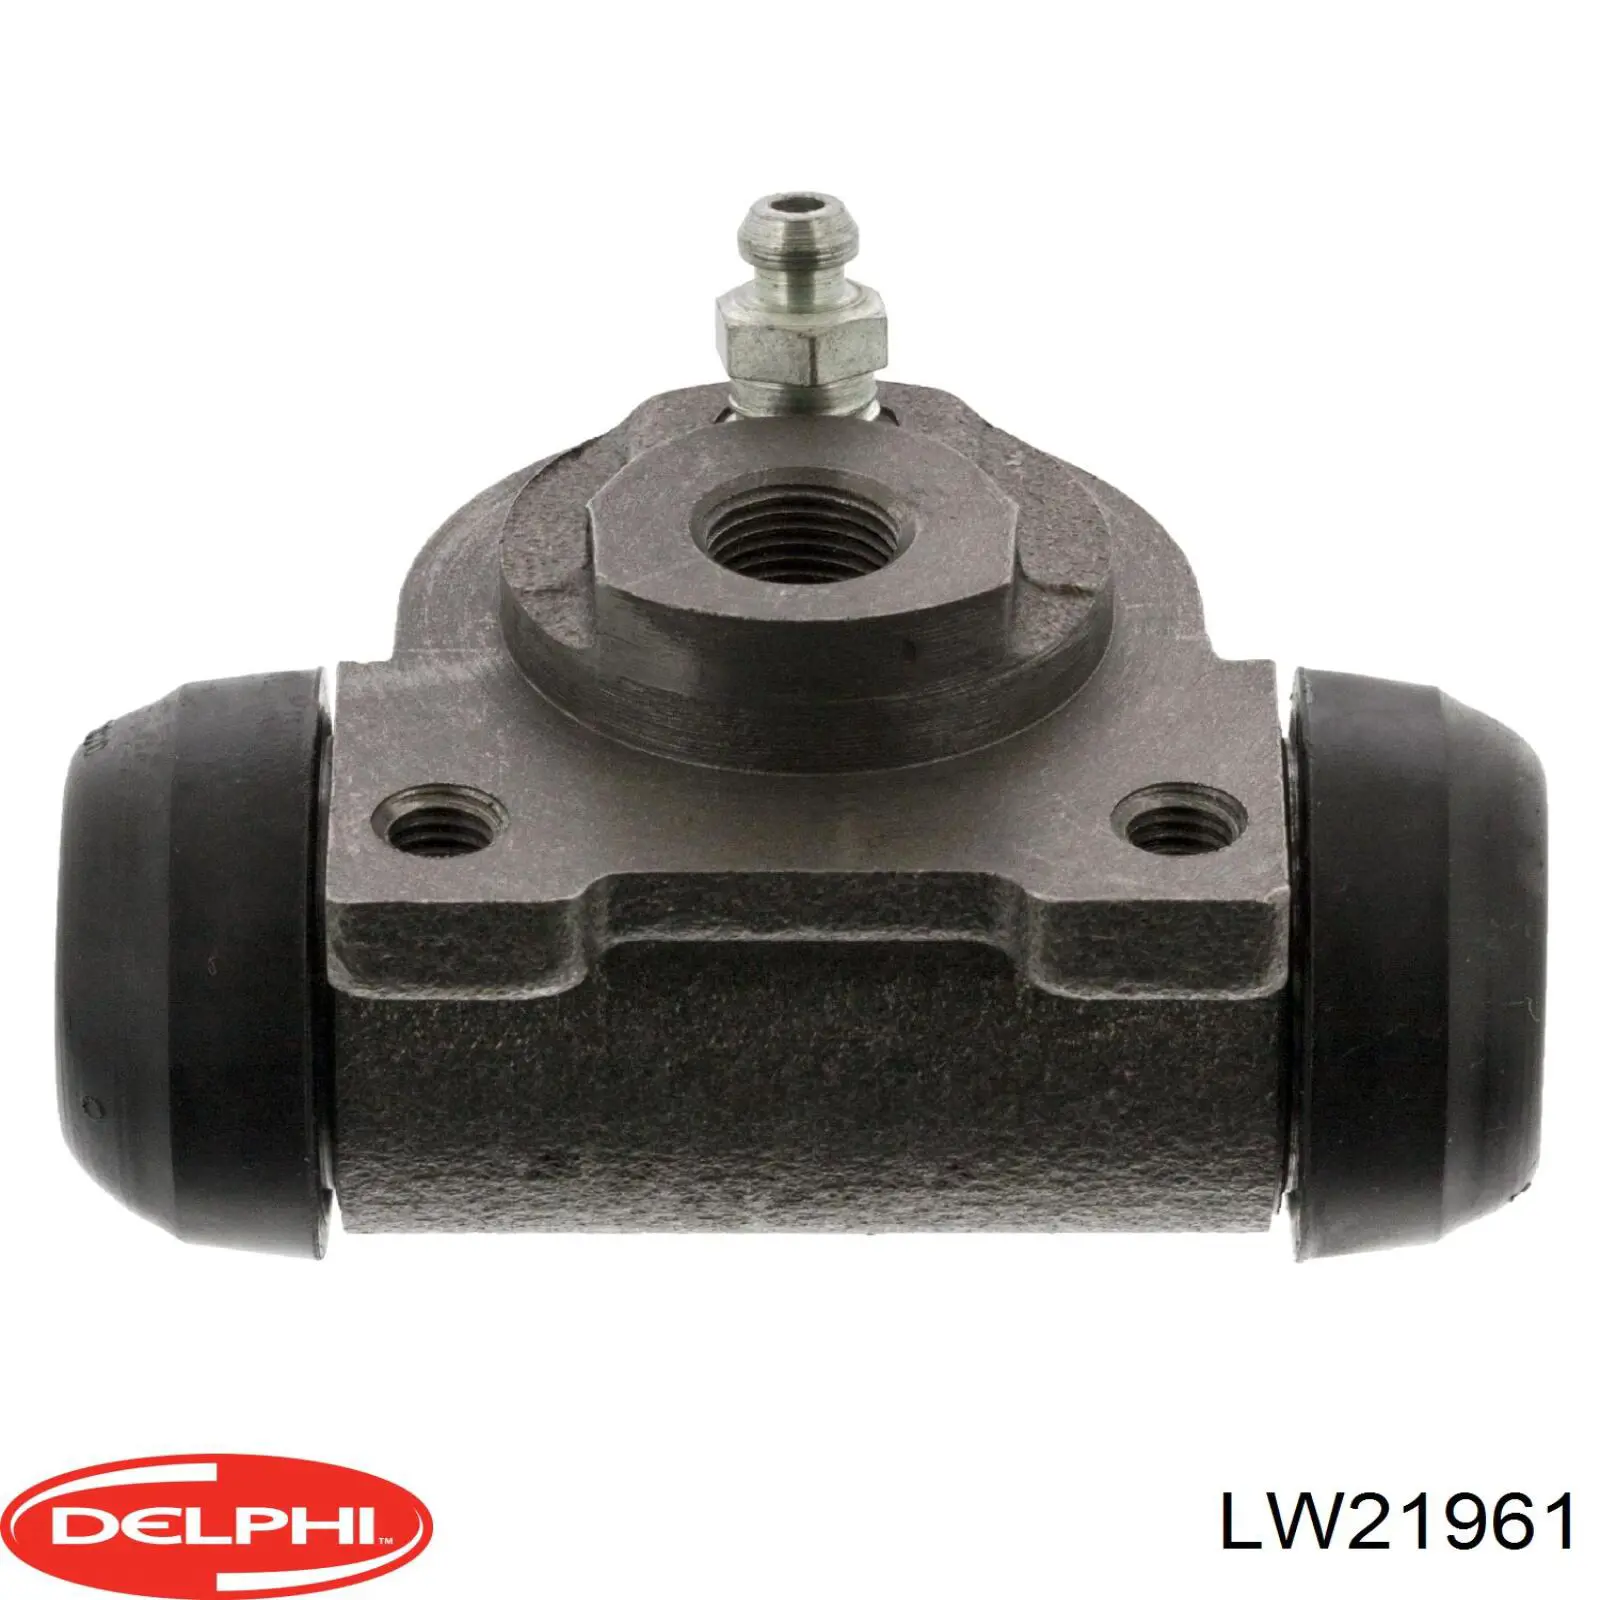 LW21961 Delphi cilindro de freno de rueda trasero